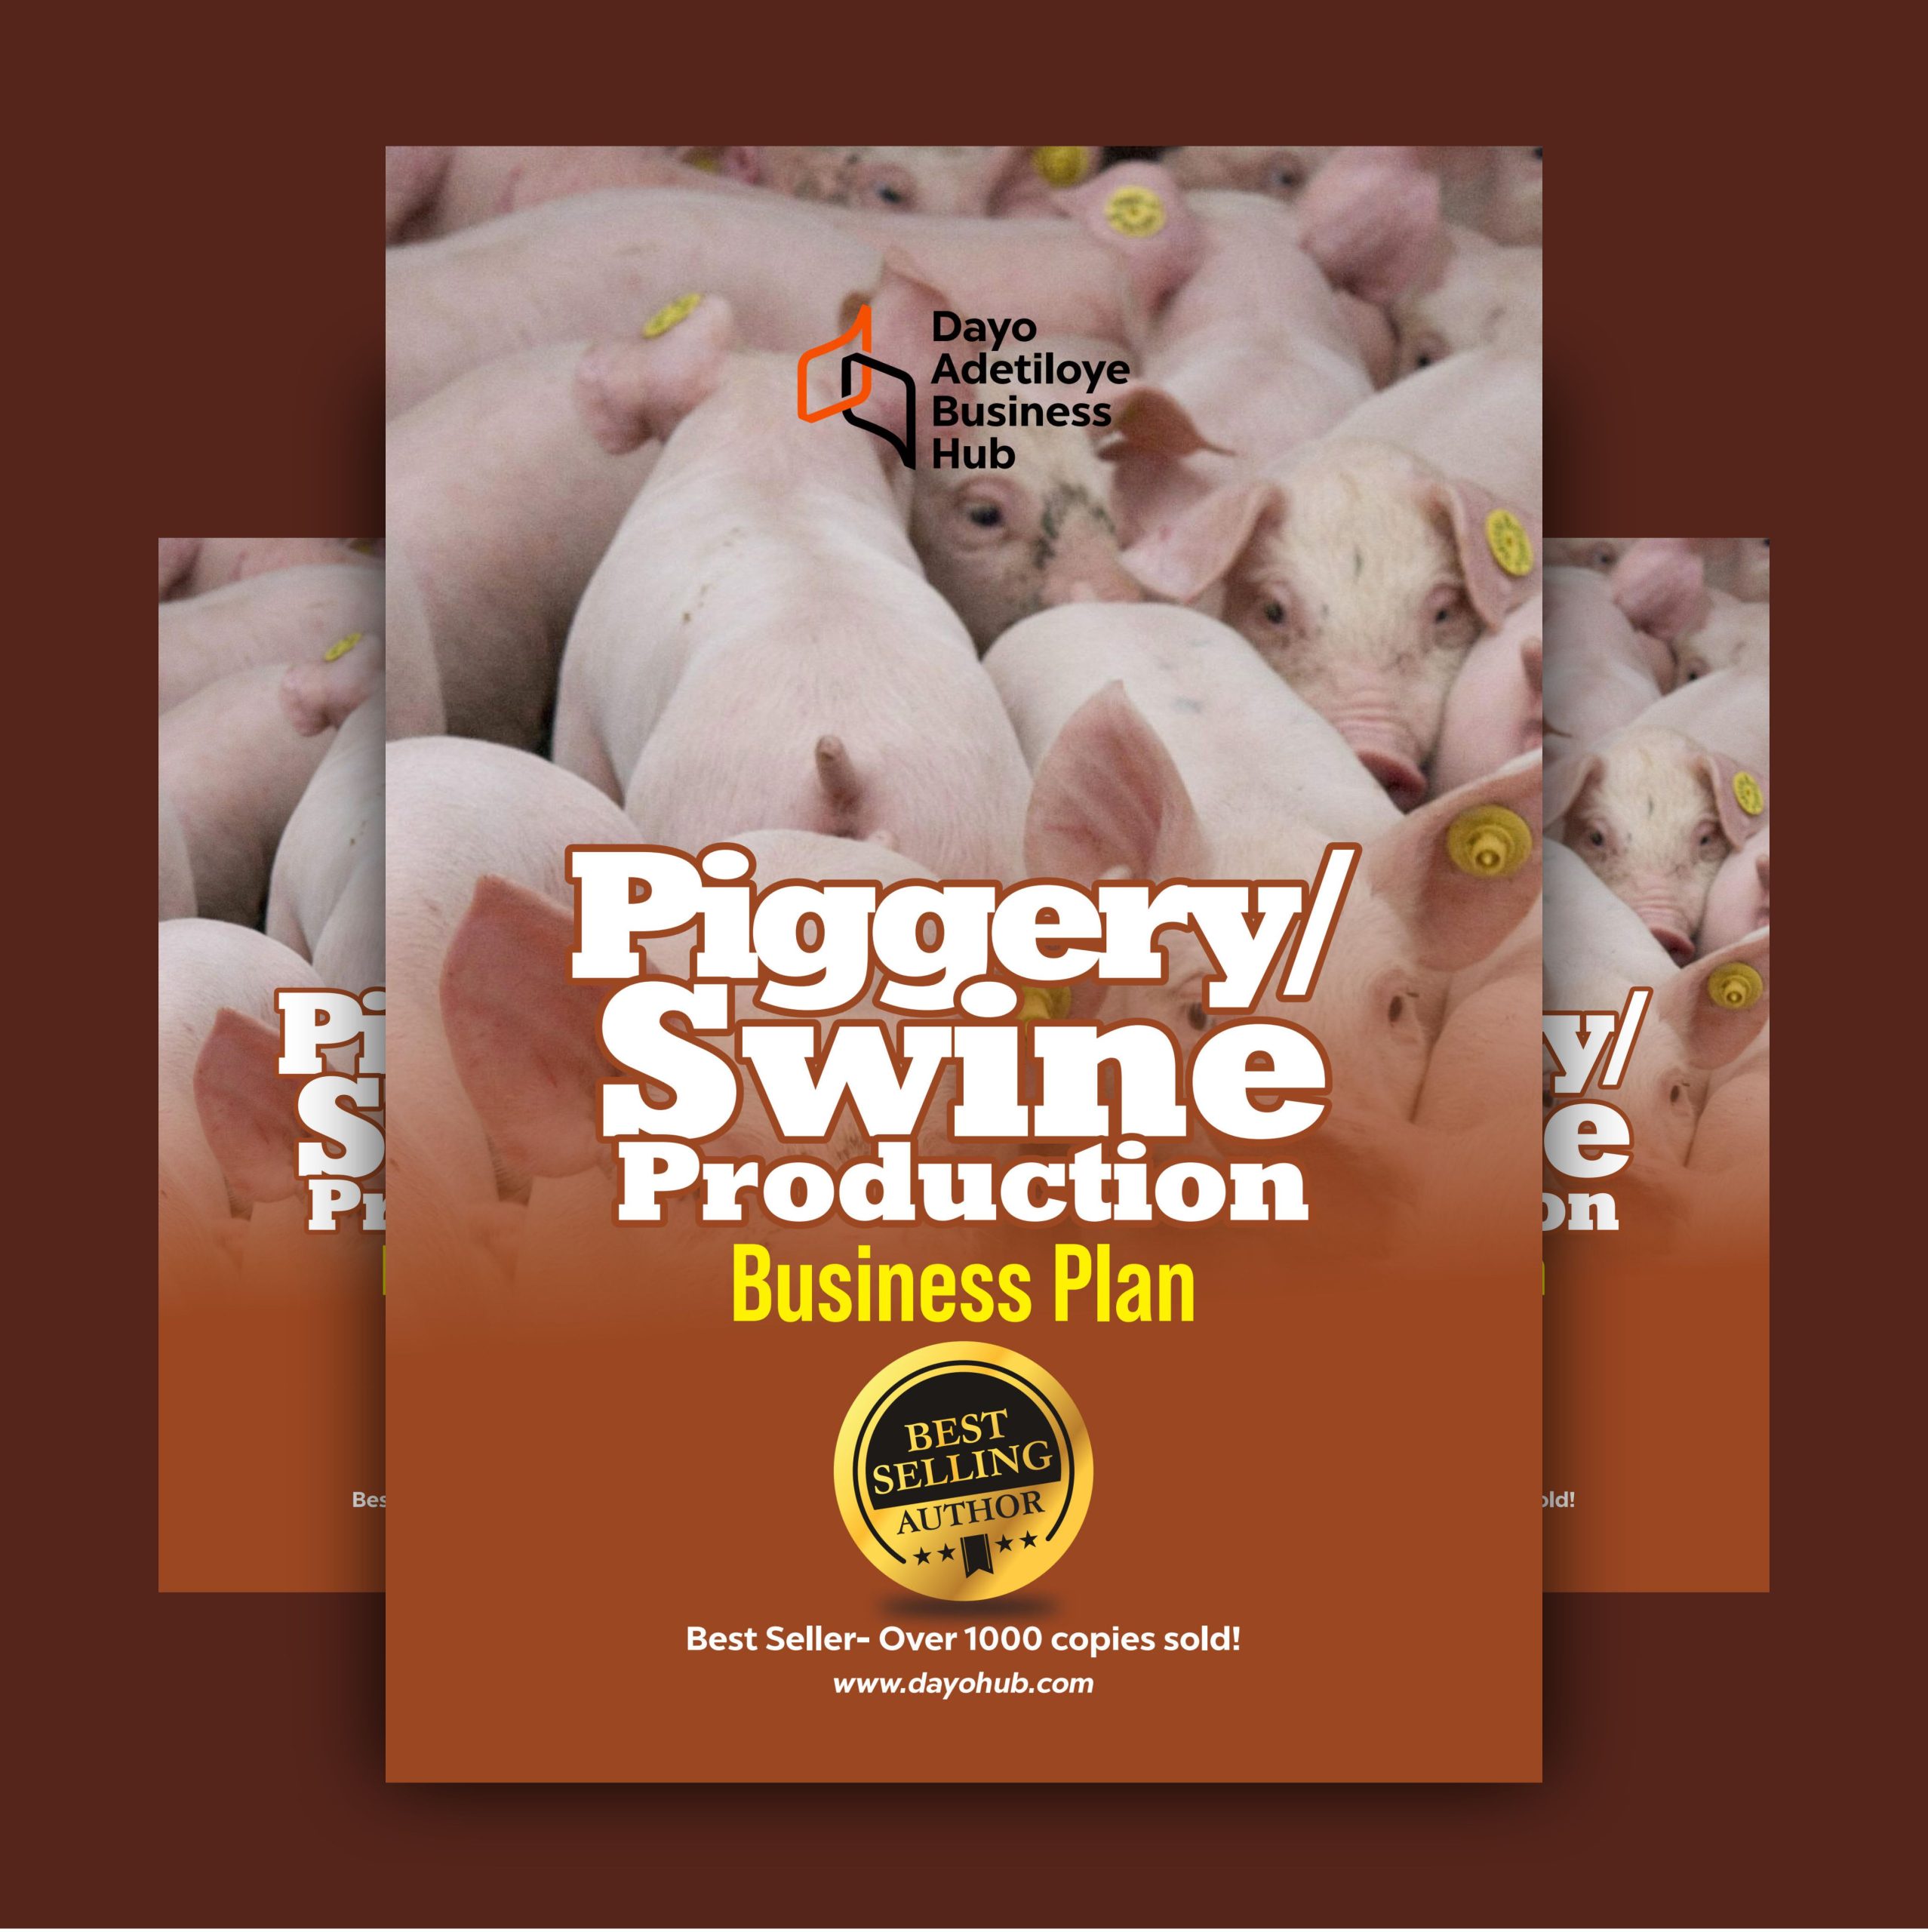 piggery business plan in nigeria pdf